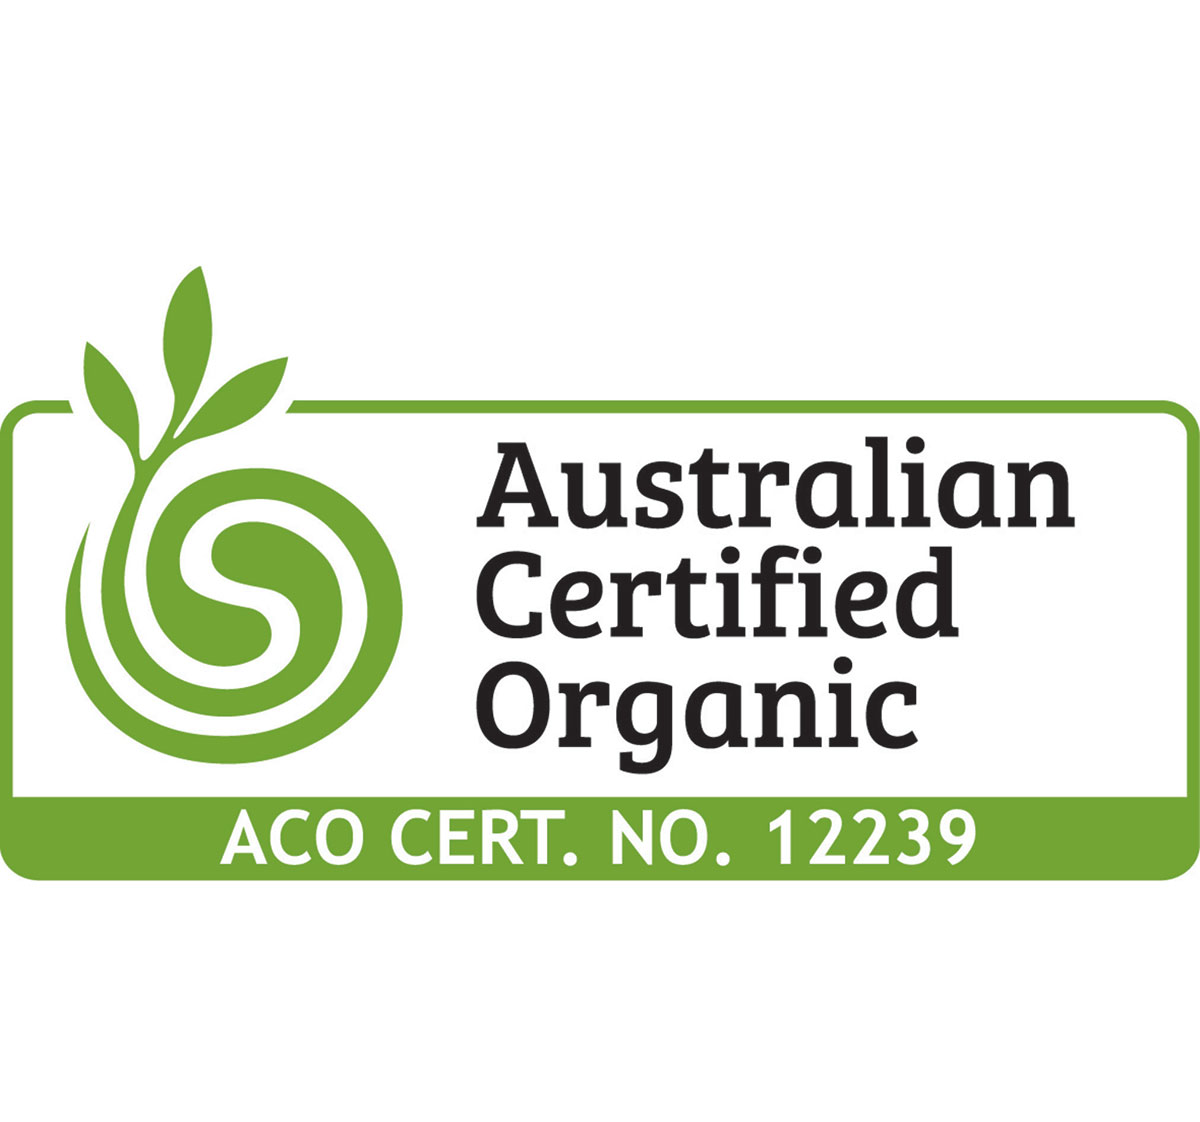 The Australian Certified Organic logo earned by Tellurian winery in Victoria, Australia.